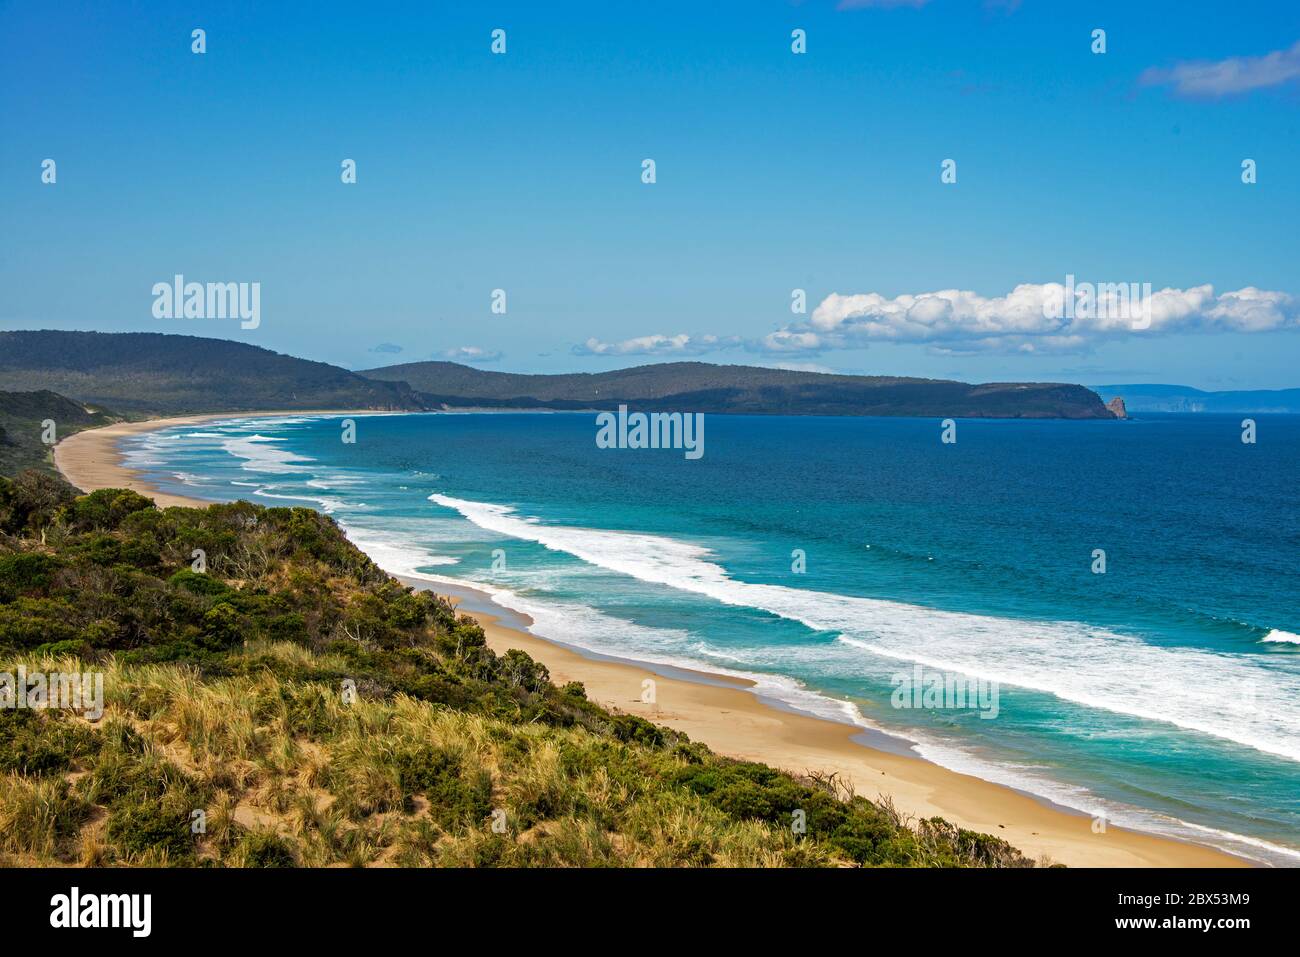 La plage principale, qui donne au nord depuis l'île de Bruny, Neck Lookout tasmanie Australie Banque D'Images